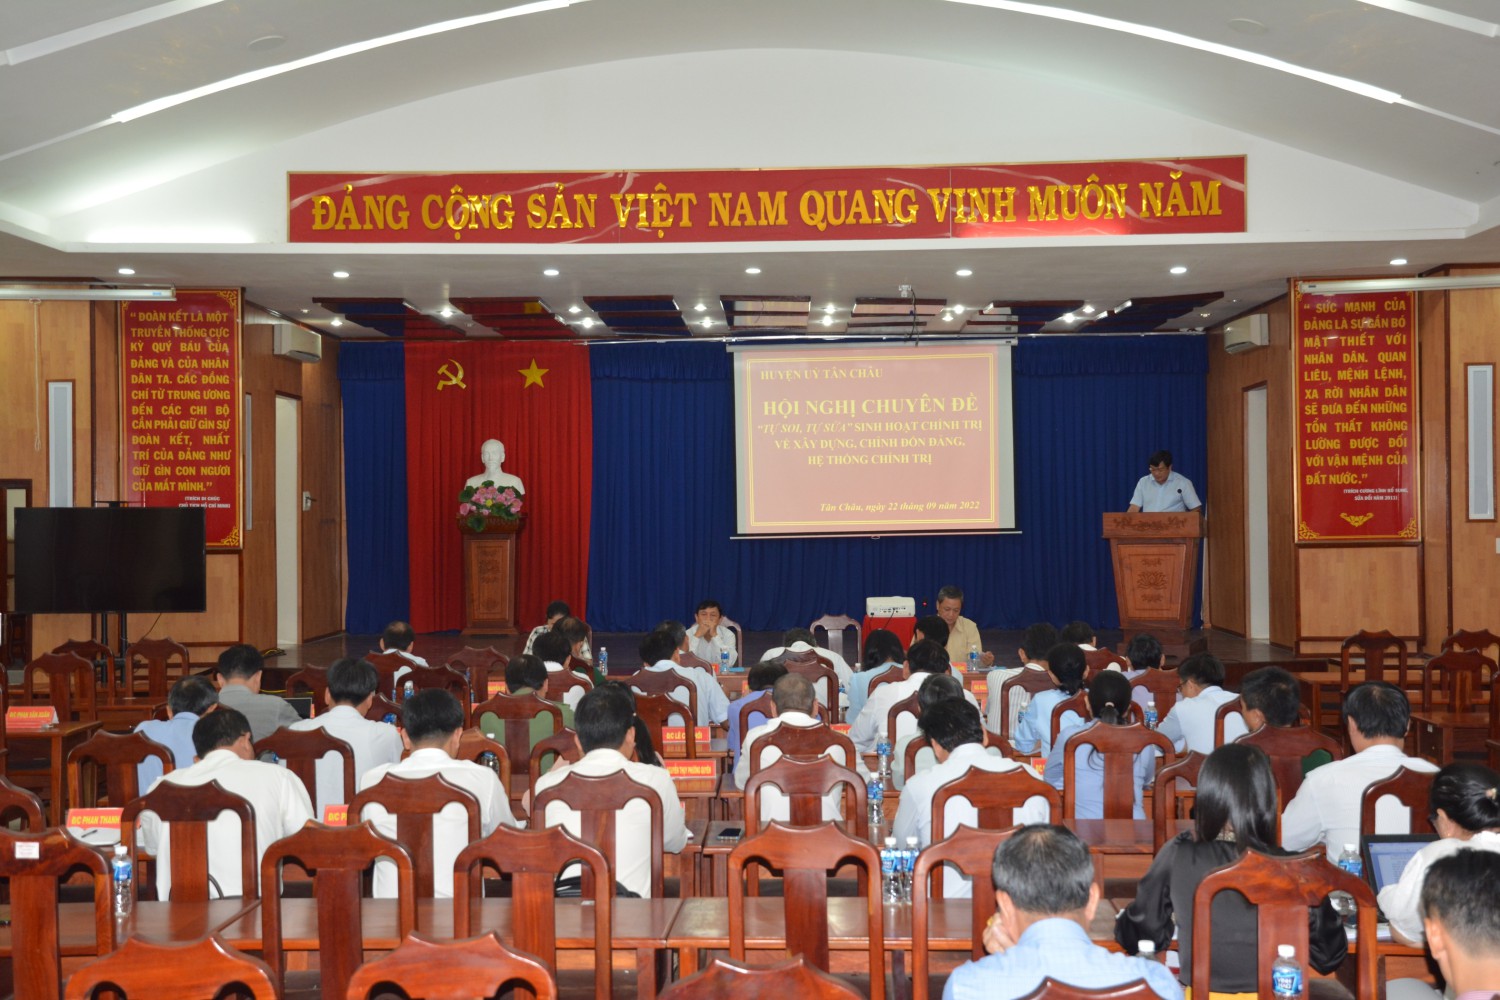 Huyện ủy Tân Châu tổ chức hội nghị chuyên đề: tự soi, tự sửa  sinh hoạt chính tri về xây dựng, chính đốn đảng, hệ thống chính trị